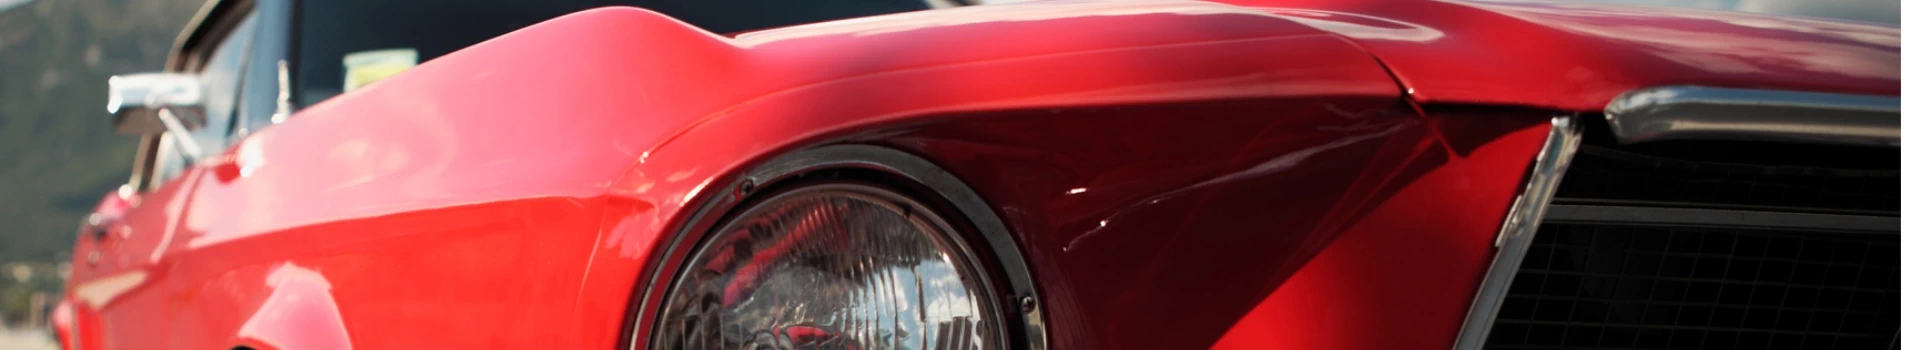 banner - czerwony samochód sportowy